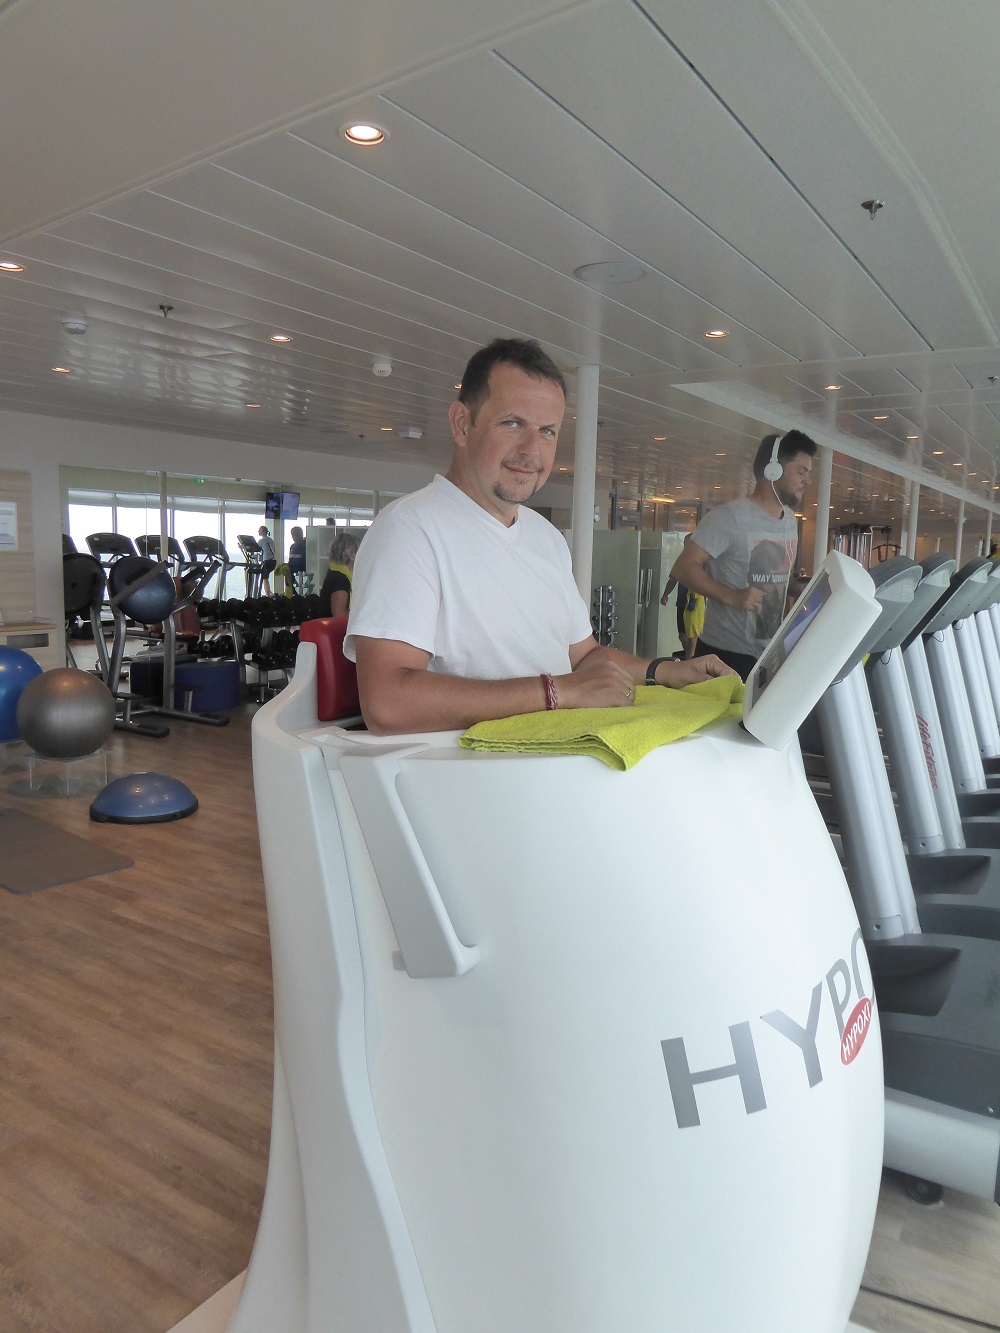 Mein Schiff Gastautor Maik Günter schwitzt im Fitnessstudio im Hypoxi (© Simon Traumann)